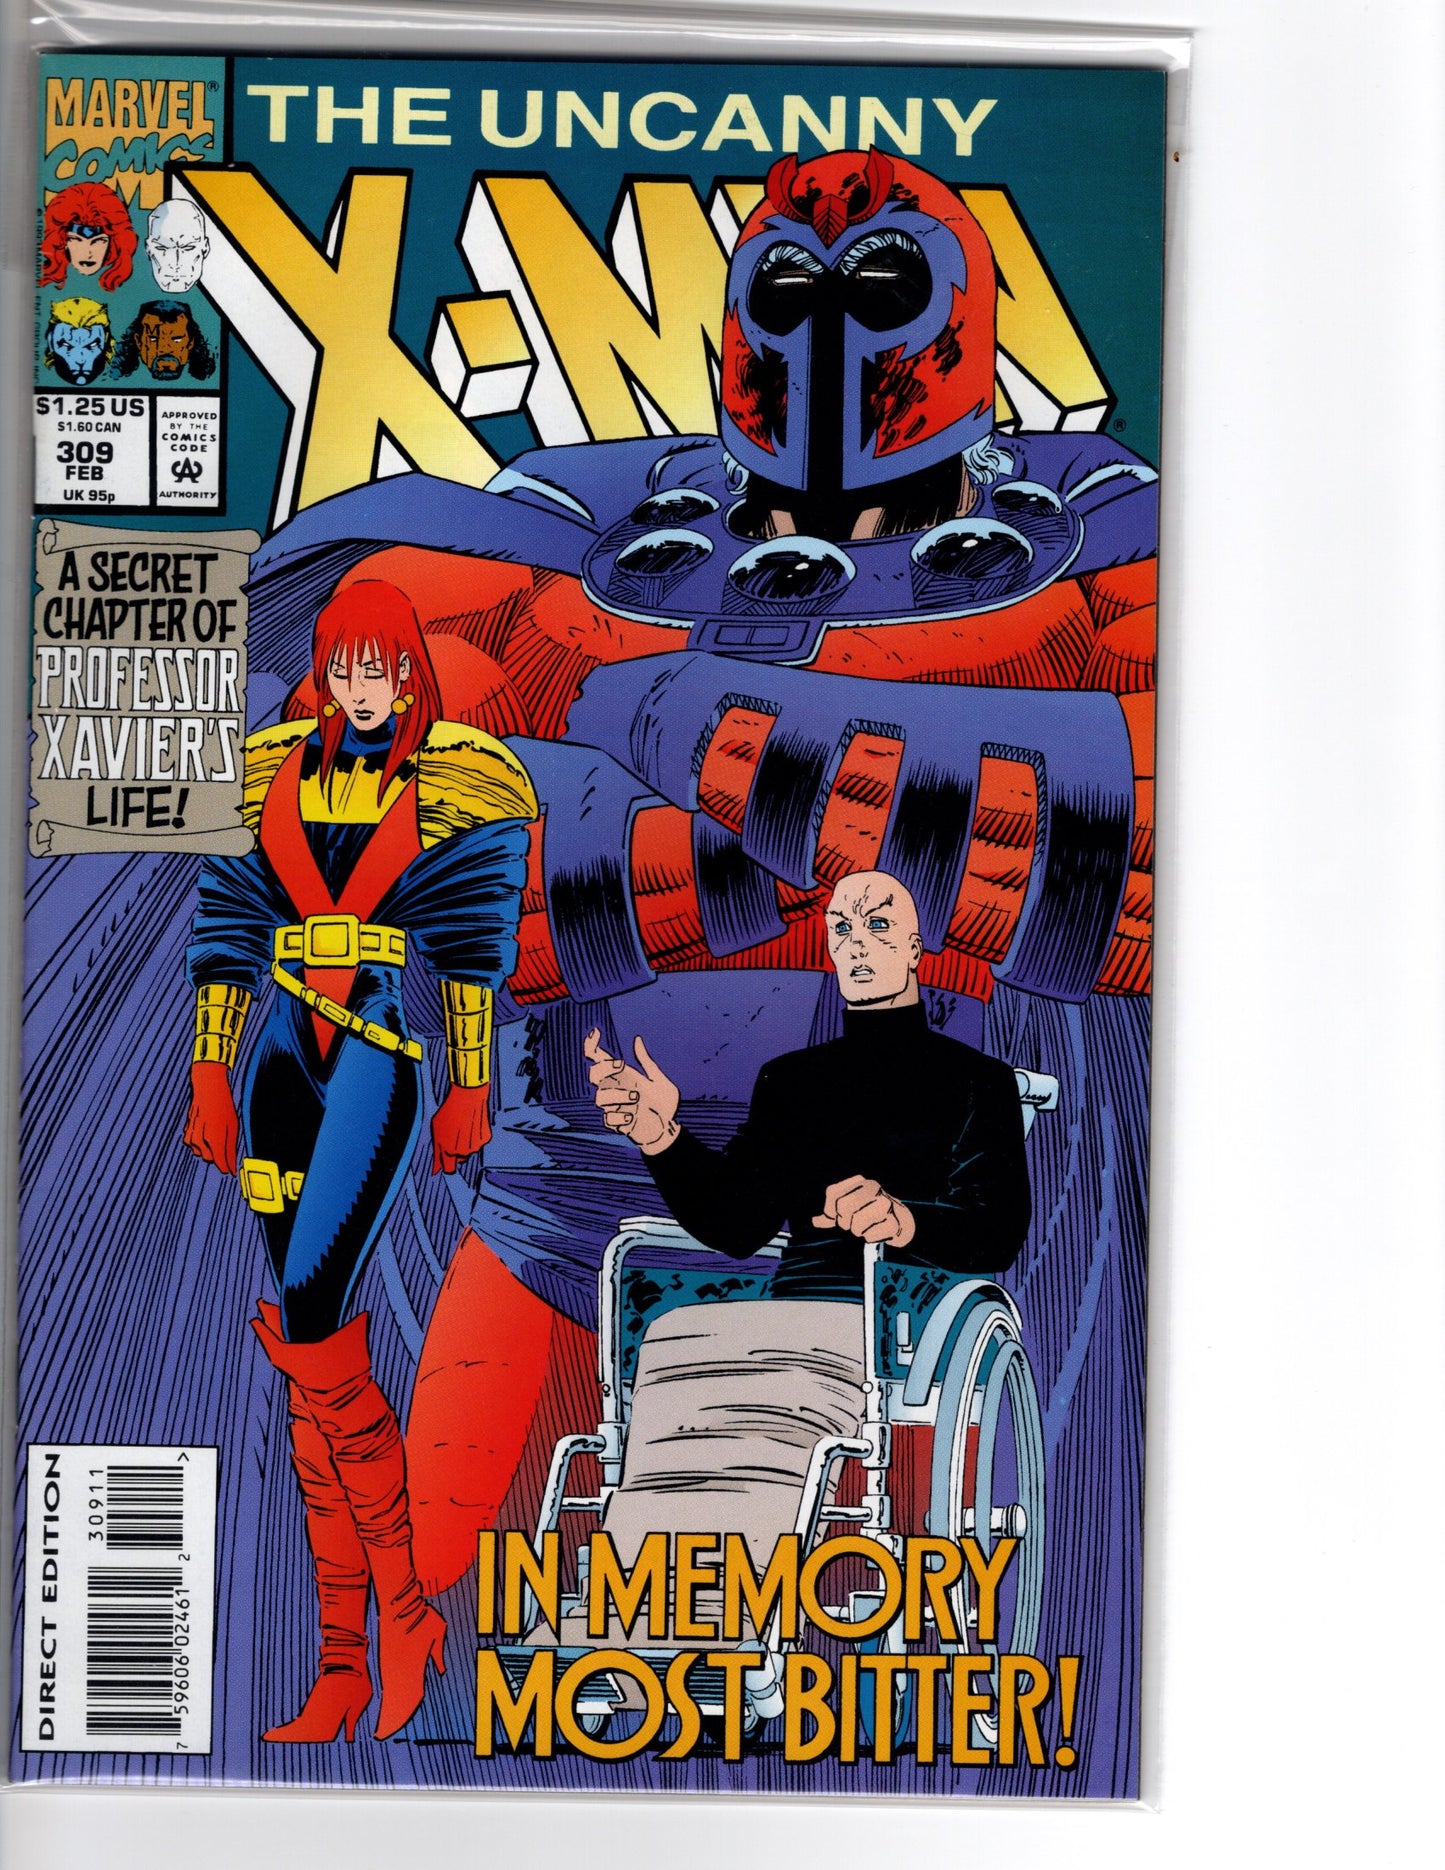 The Uncanny X-Men No. 309